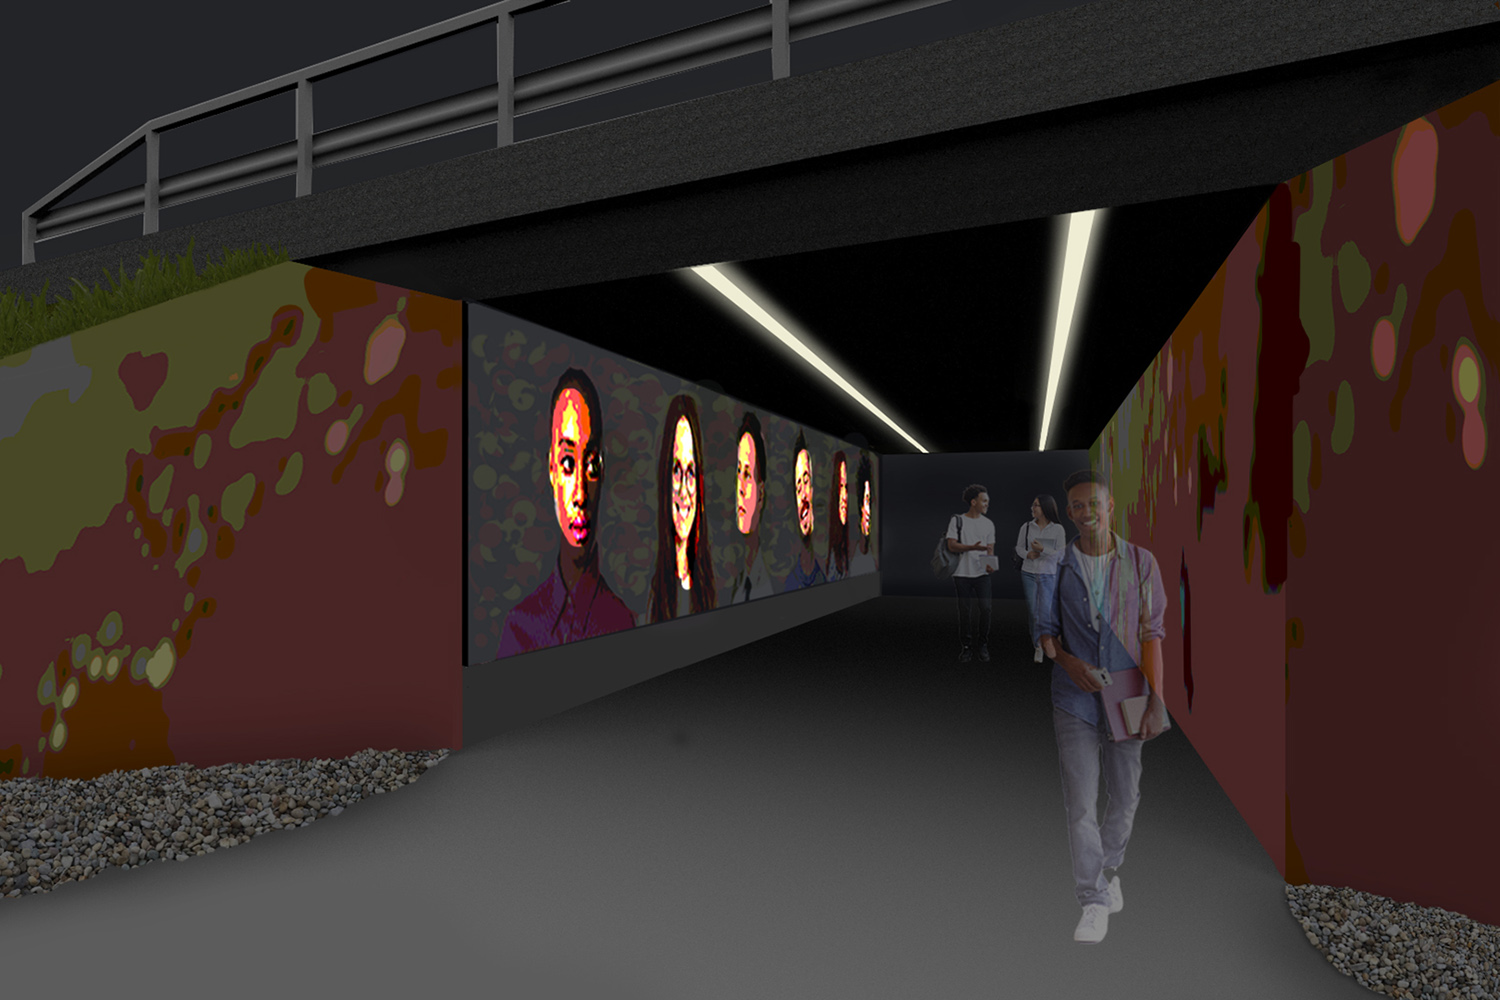 Savilahden alueen opiskelijoiden kasvokuvia graafisena ja valaistuna alikulkutunnelin seinässä.